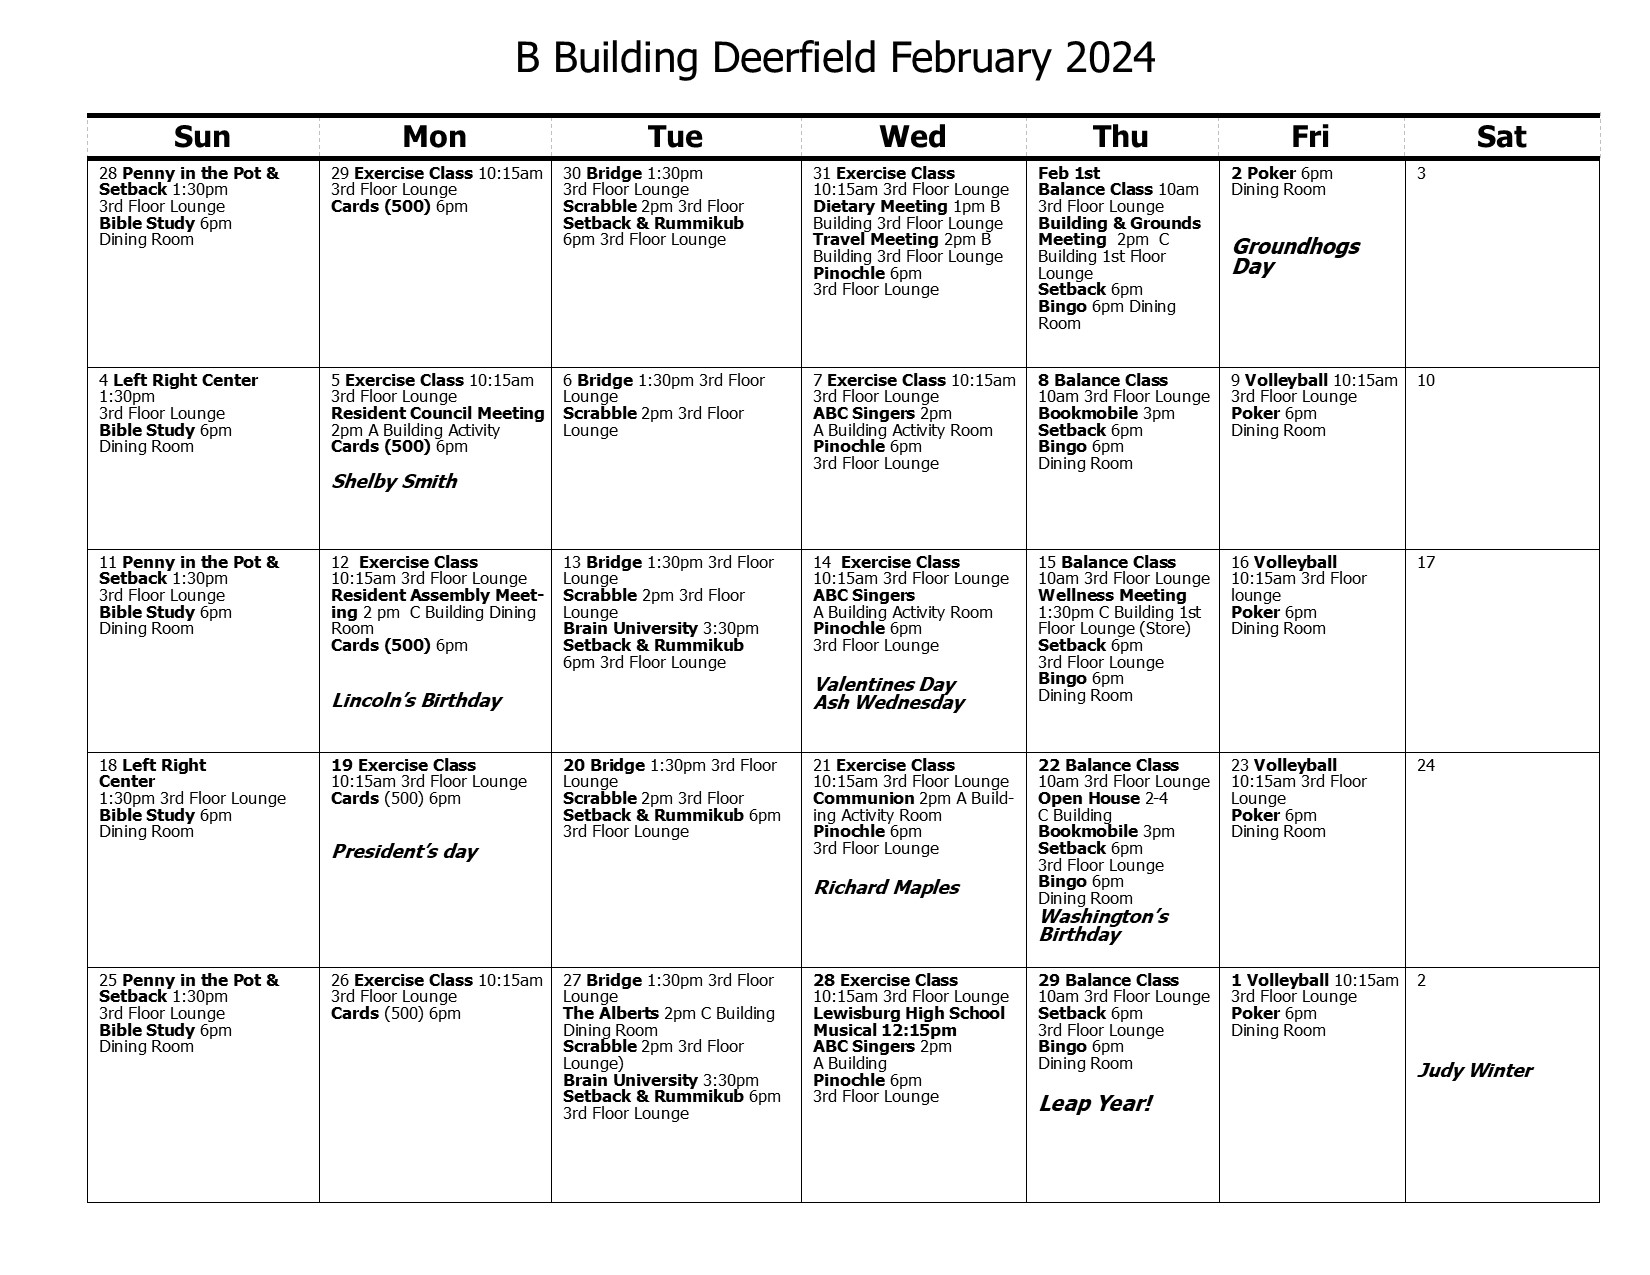 B Building Calendar February 2024